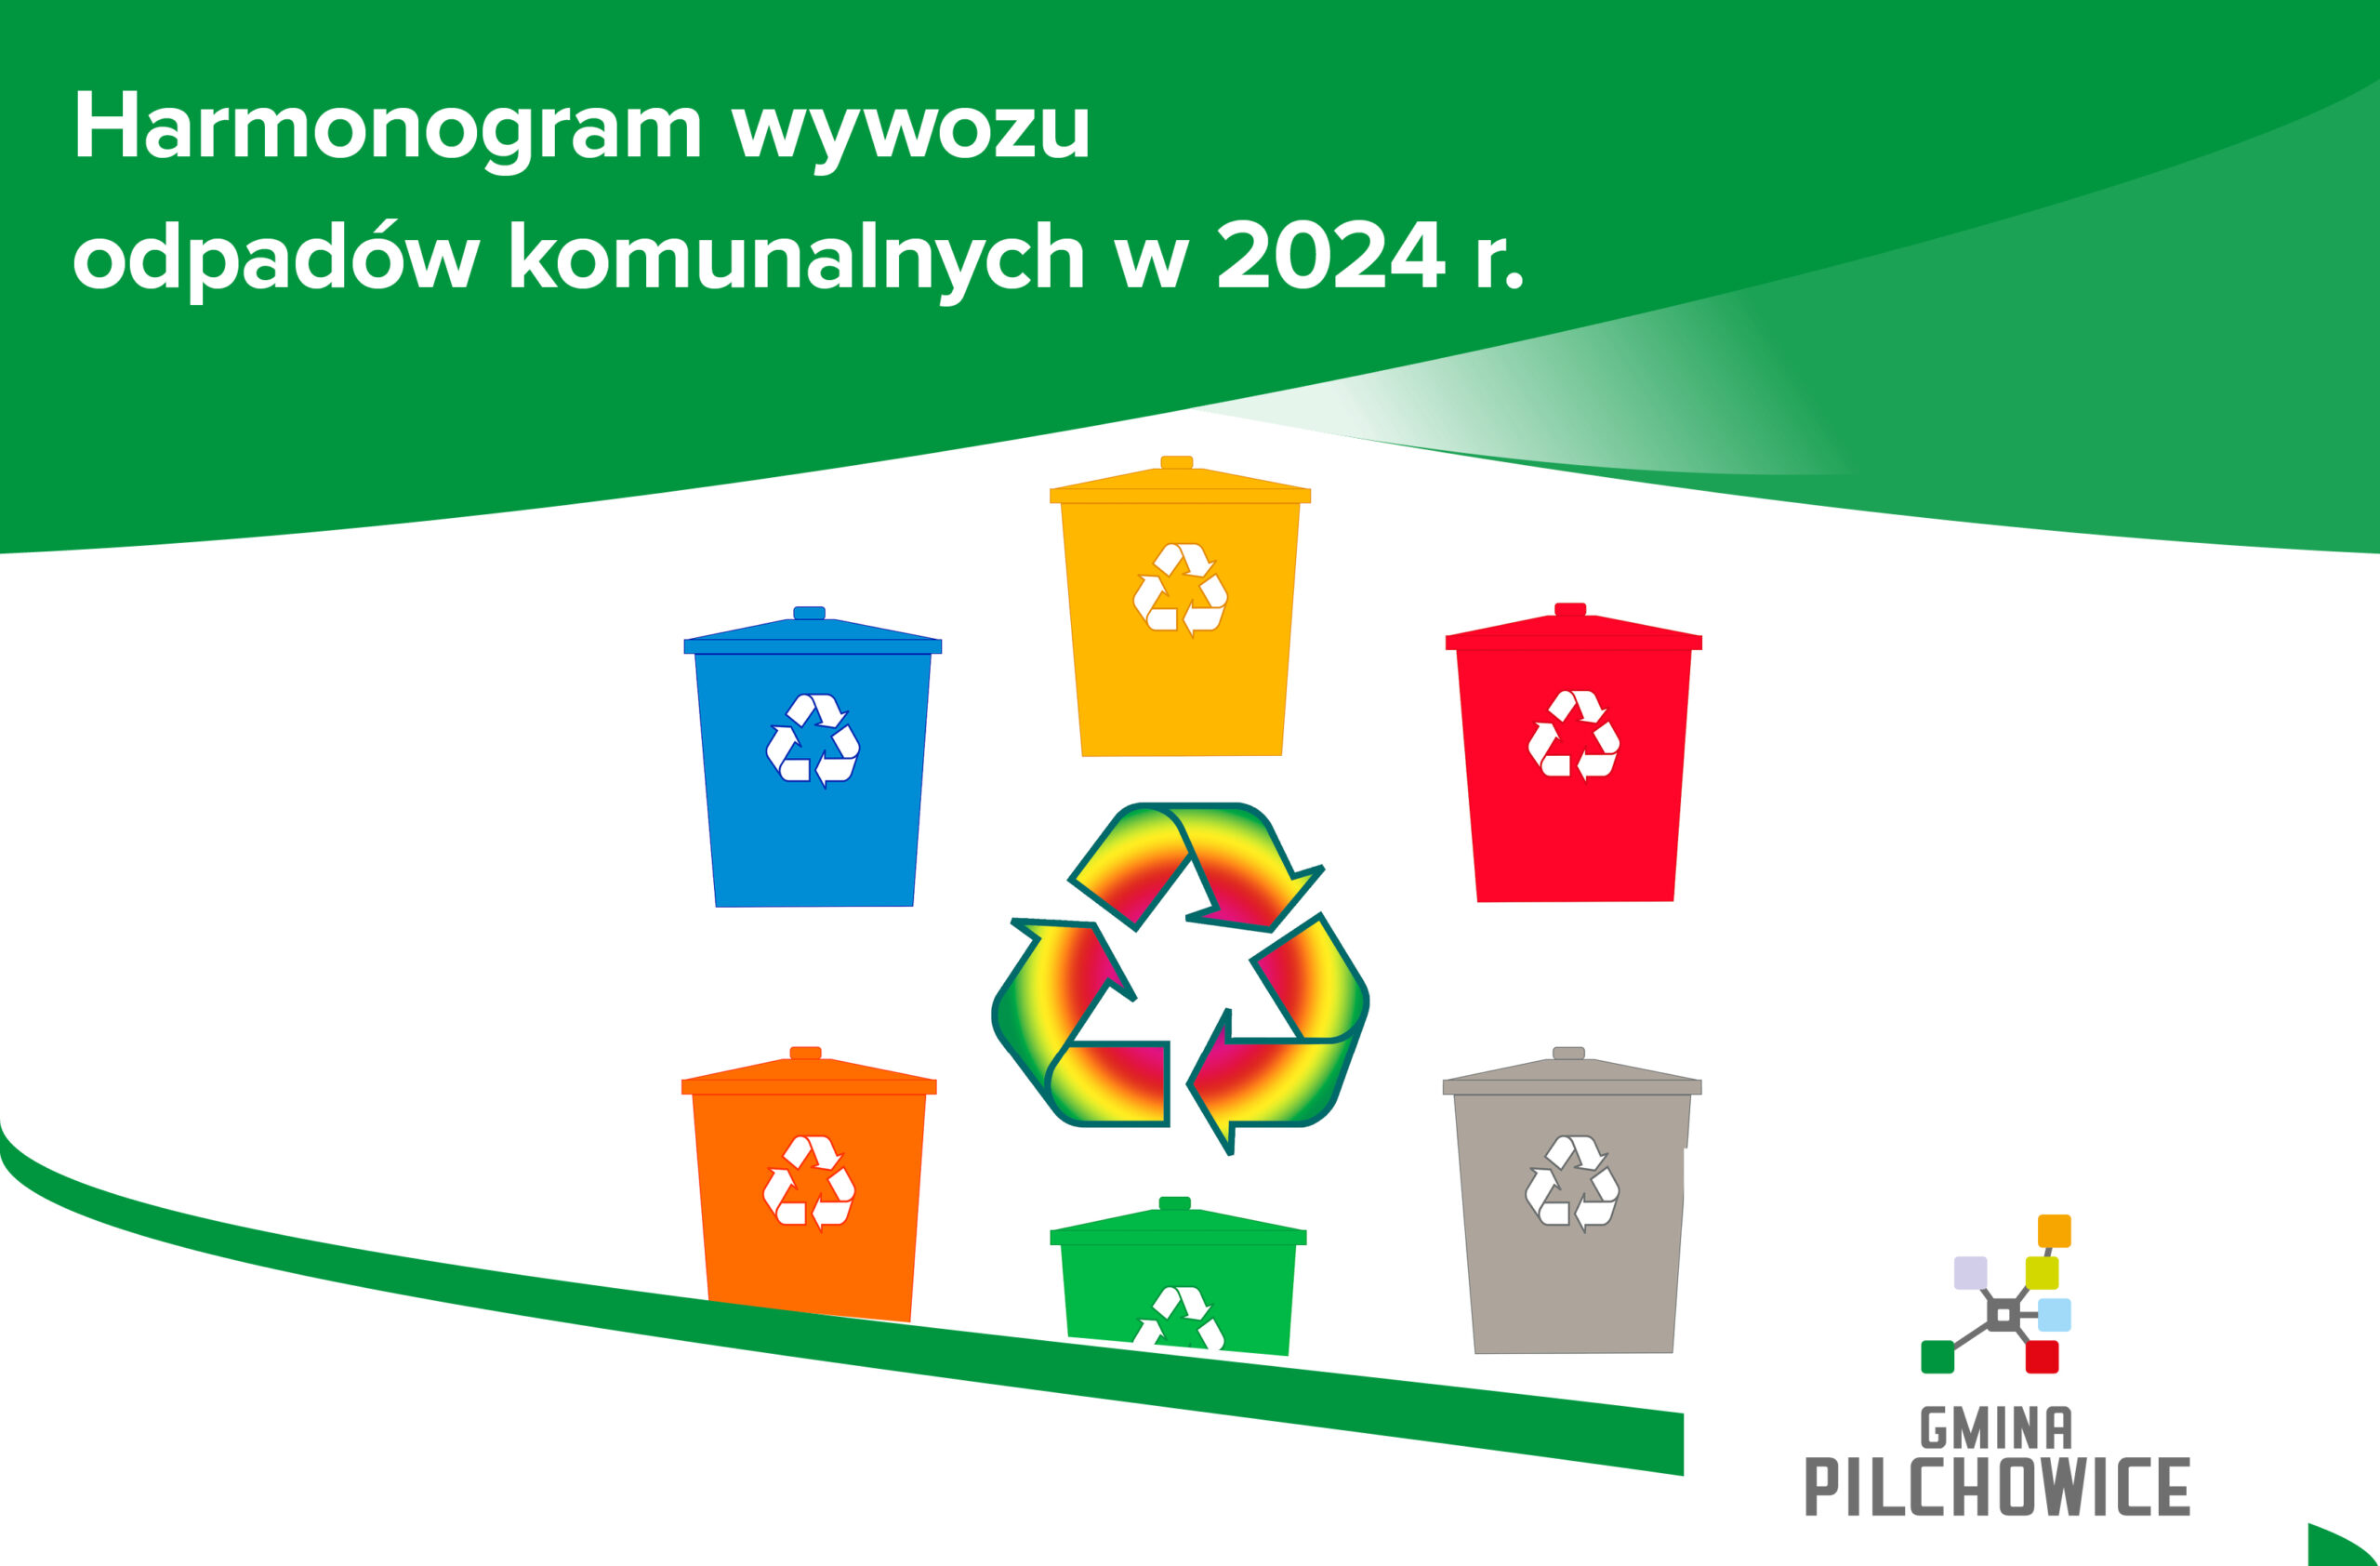 Harmonogram wywozu odpadów komunalnych w 2024 r.